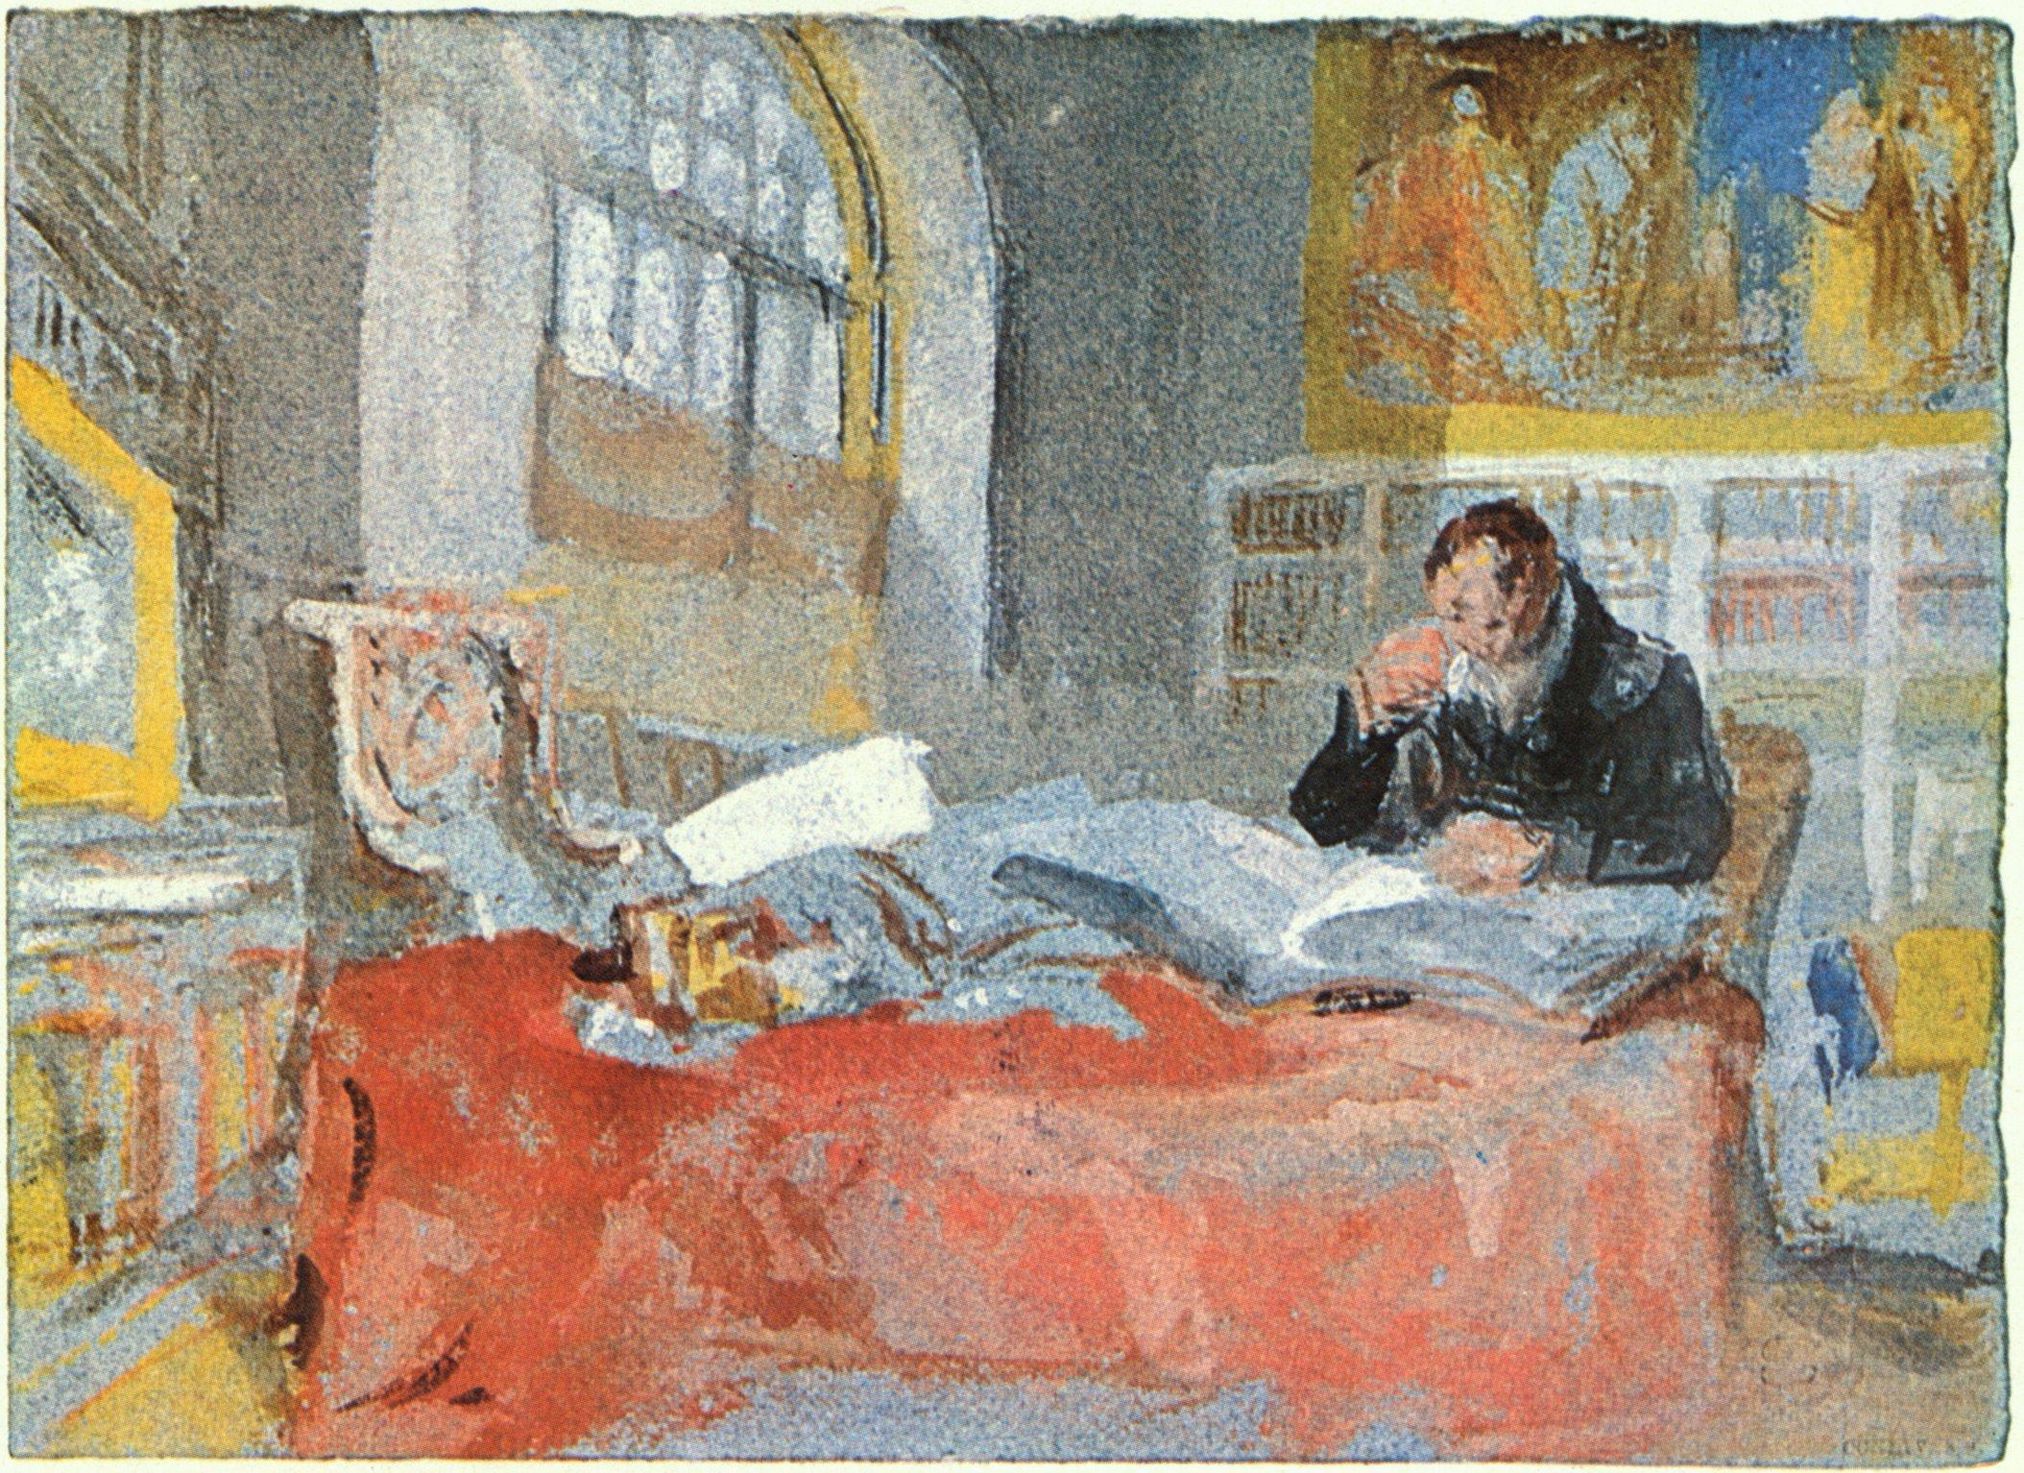 Joseph Mallord William Turner: Turner in seinem Atelier